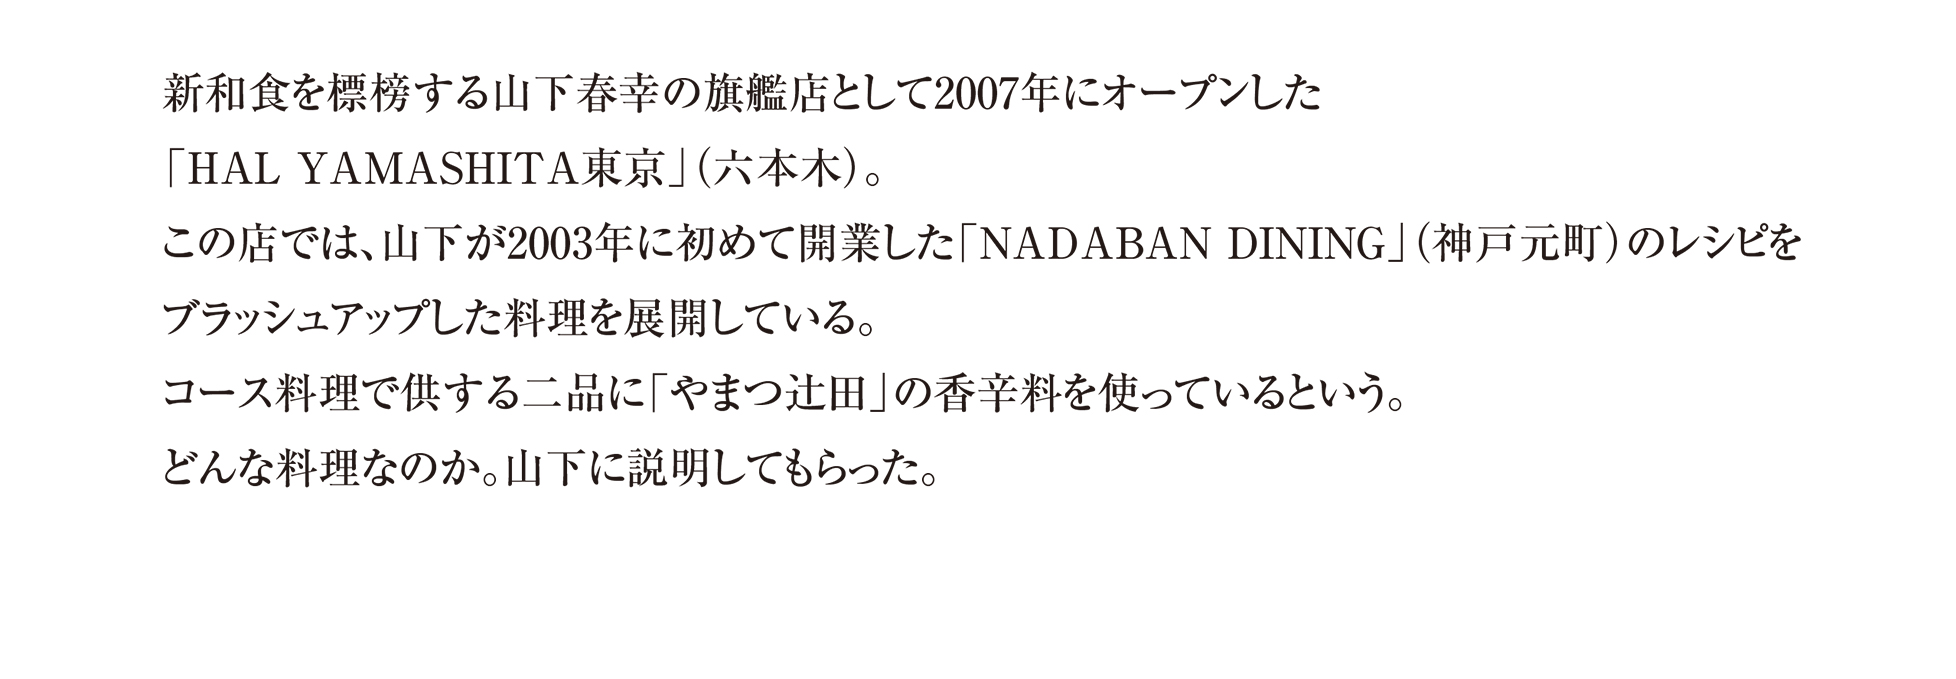 新和食を標榜する山下春幸の旗艦店として2007年にオープンした 「HAL YAMASHITA東京」(六本木)。
この店では、山下が2003年に初めて開業した「NADABAN DINING」(神戸元町)のレシピを ブラッシュアップした料理を展開している。 コース料理で供する二品に「やまつ辻田」の香辛料を使っているという。 どんな料理なのか。山下に説明してもらった。